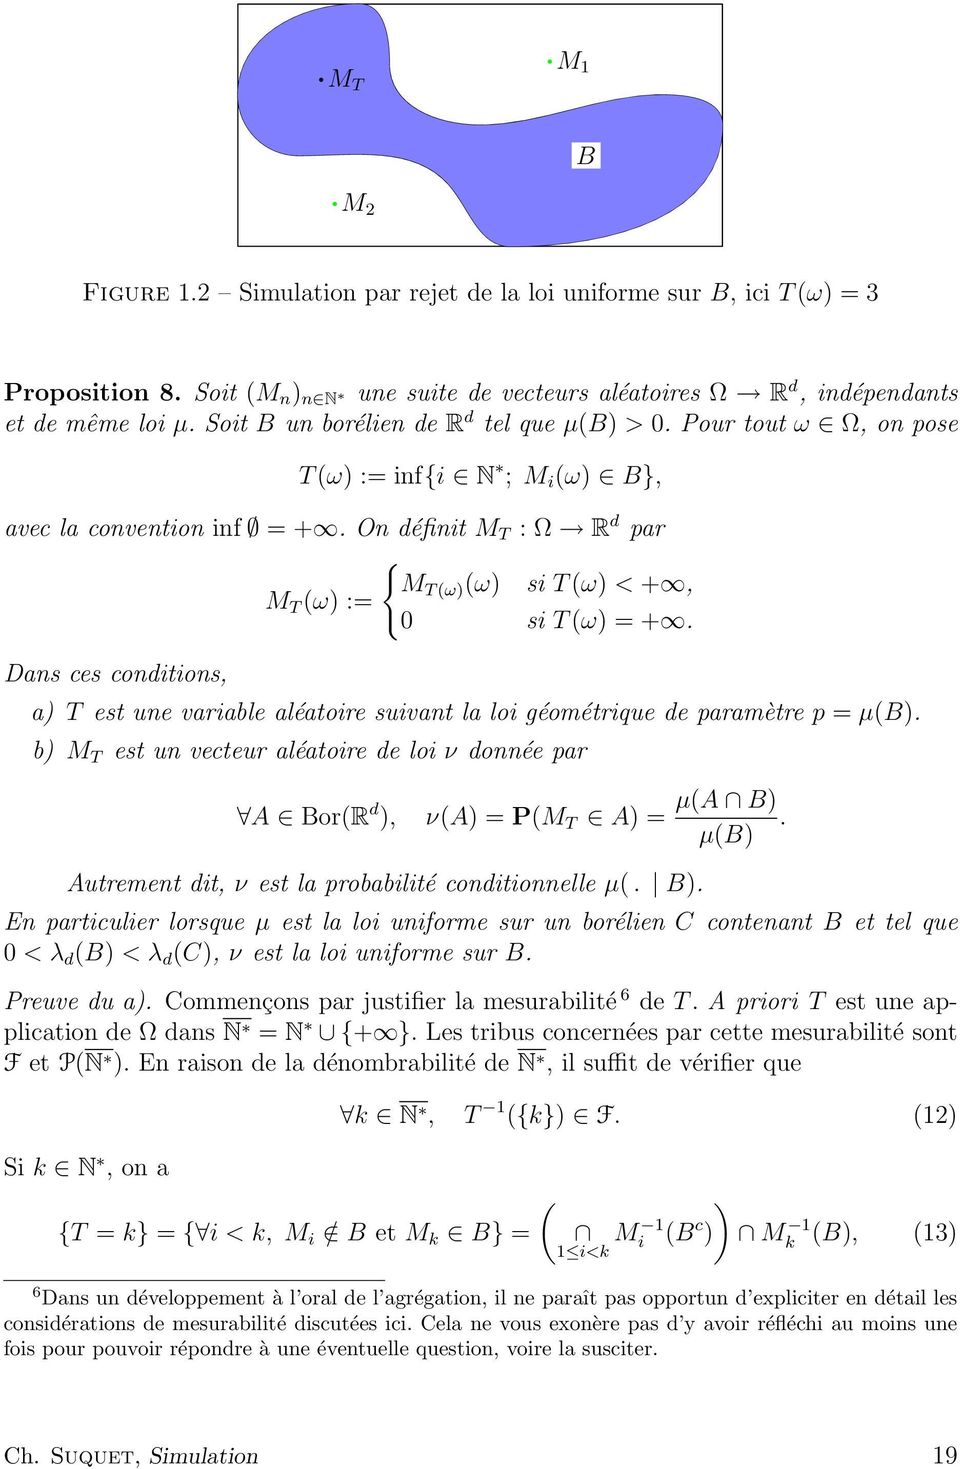 On définit M T : Ω R d par { M T (ω) (ω) si T (ω) < +, M T (ω) := 0 si T (ω) = +. Dans ces conditions, a) T est une variable aléatoire suivant la loi géométrique de paramètre p = µ(b).